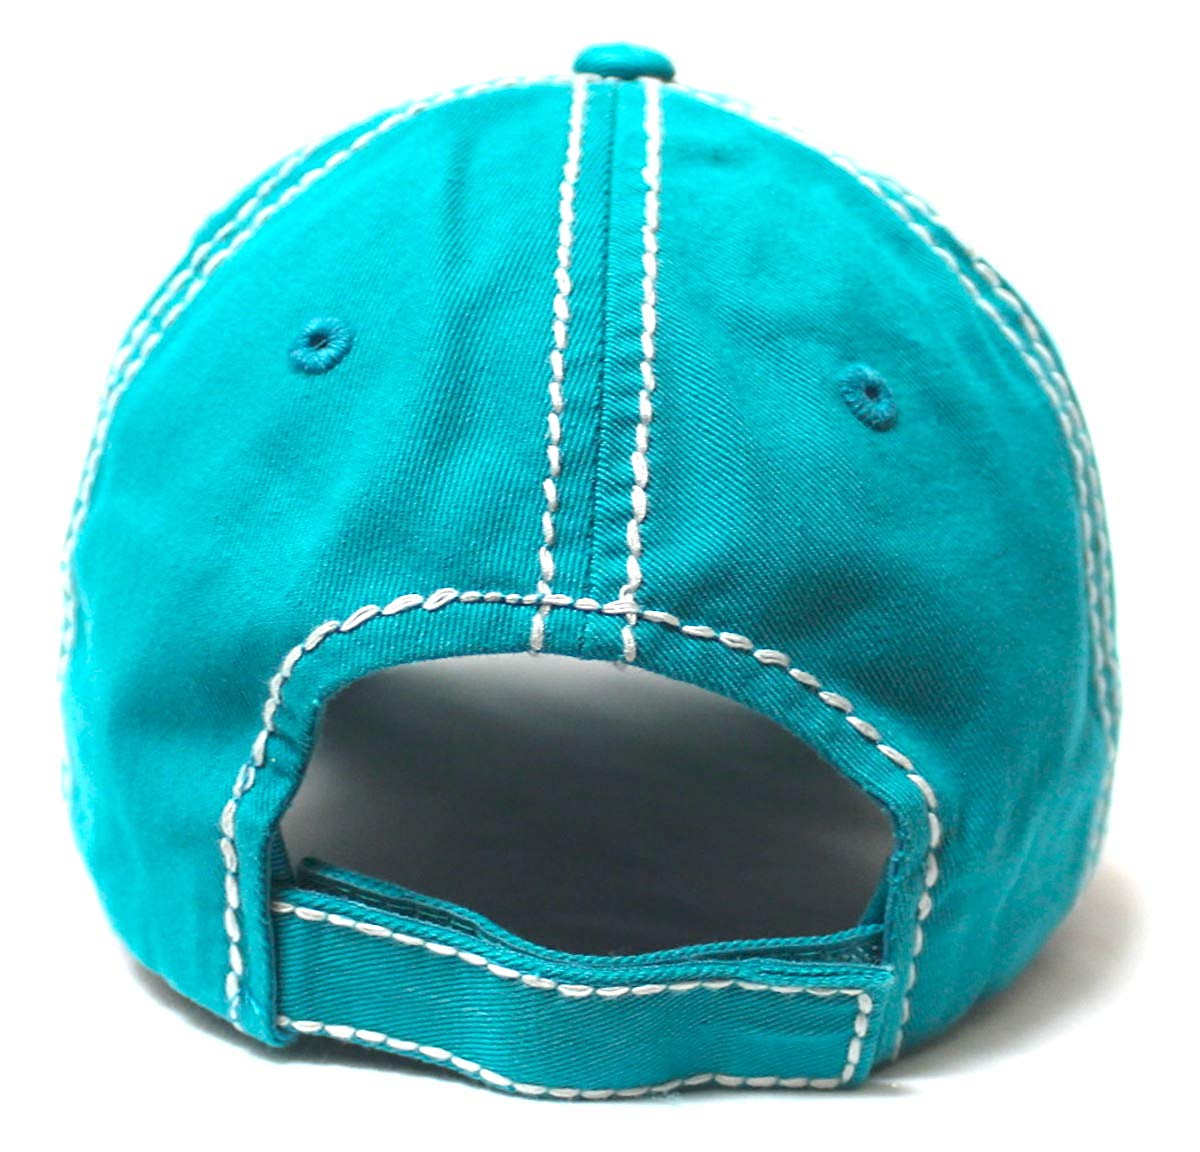 Women's Baseball Cap Faith Over Fear Glitter Monogram Hat, Turquoise Blue - Caps 'N Vintage 